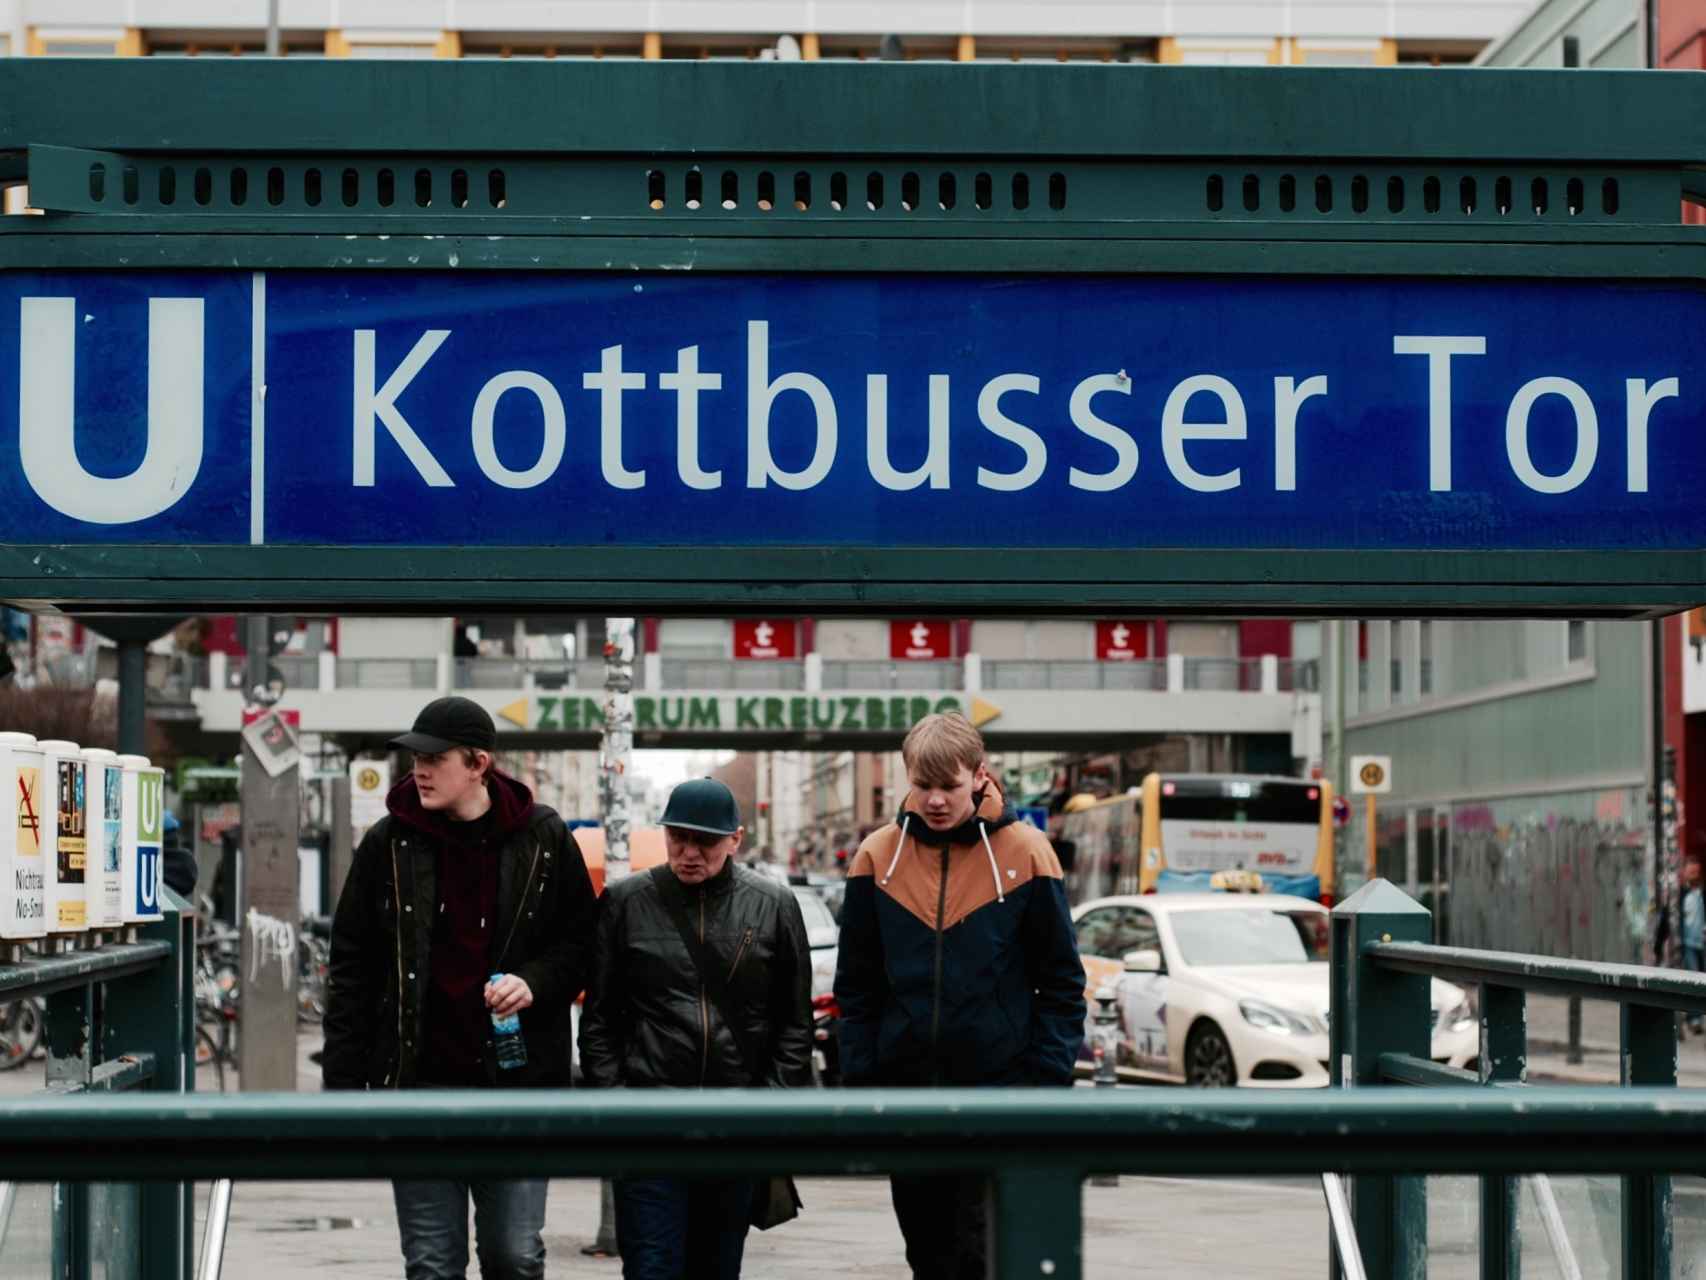 La zona de Kottbusser Tor se considera una zona peligrosa por la Policía.